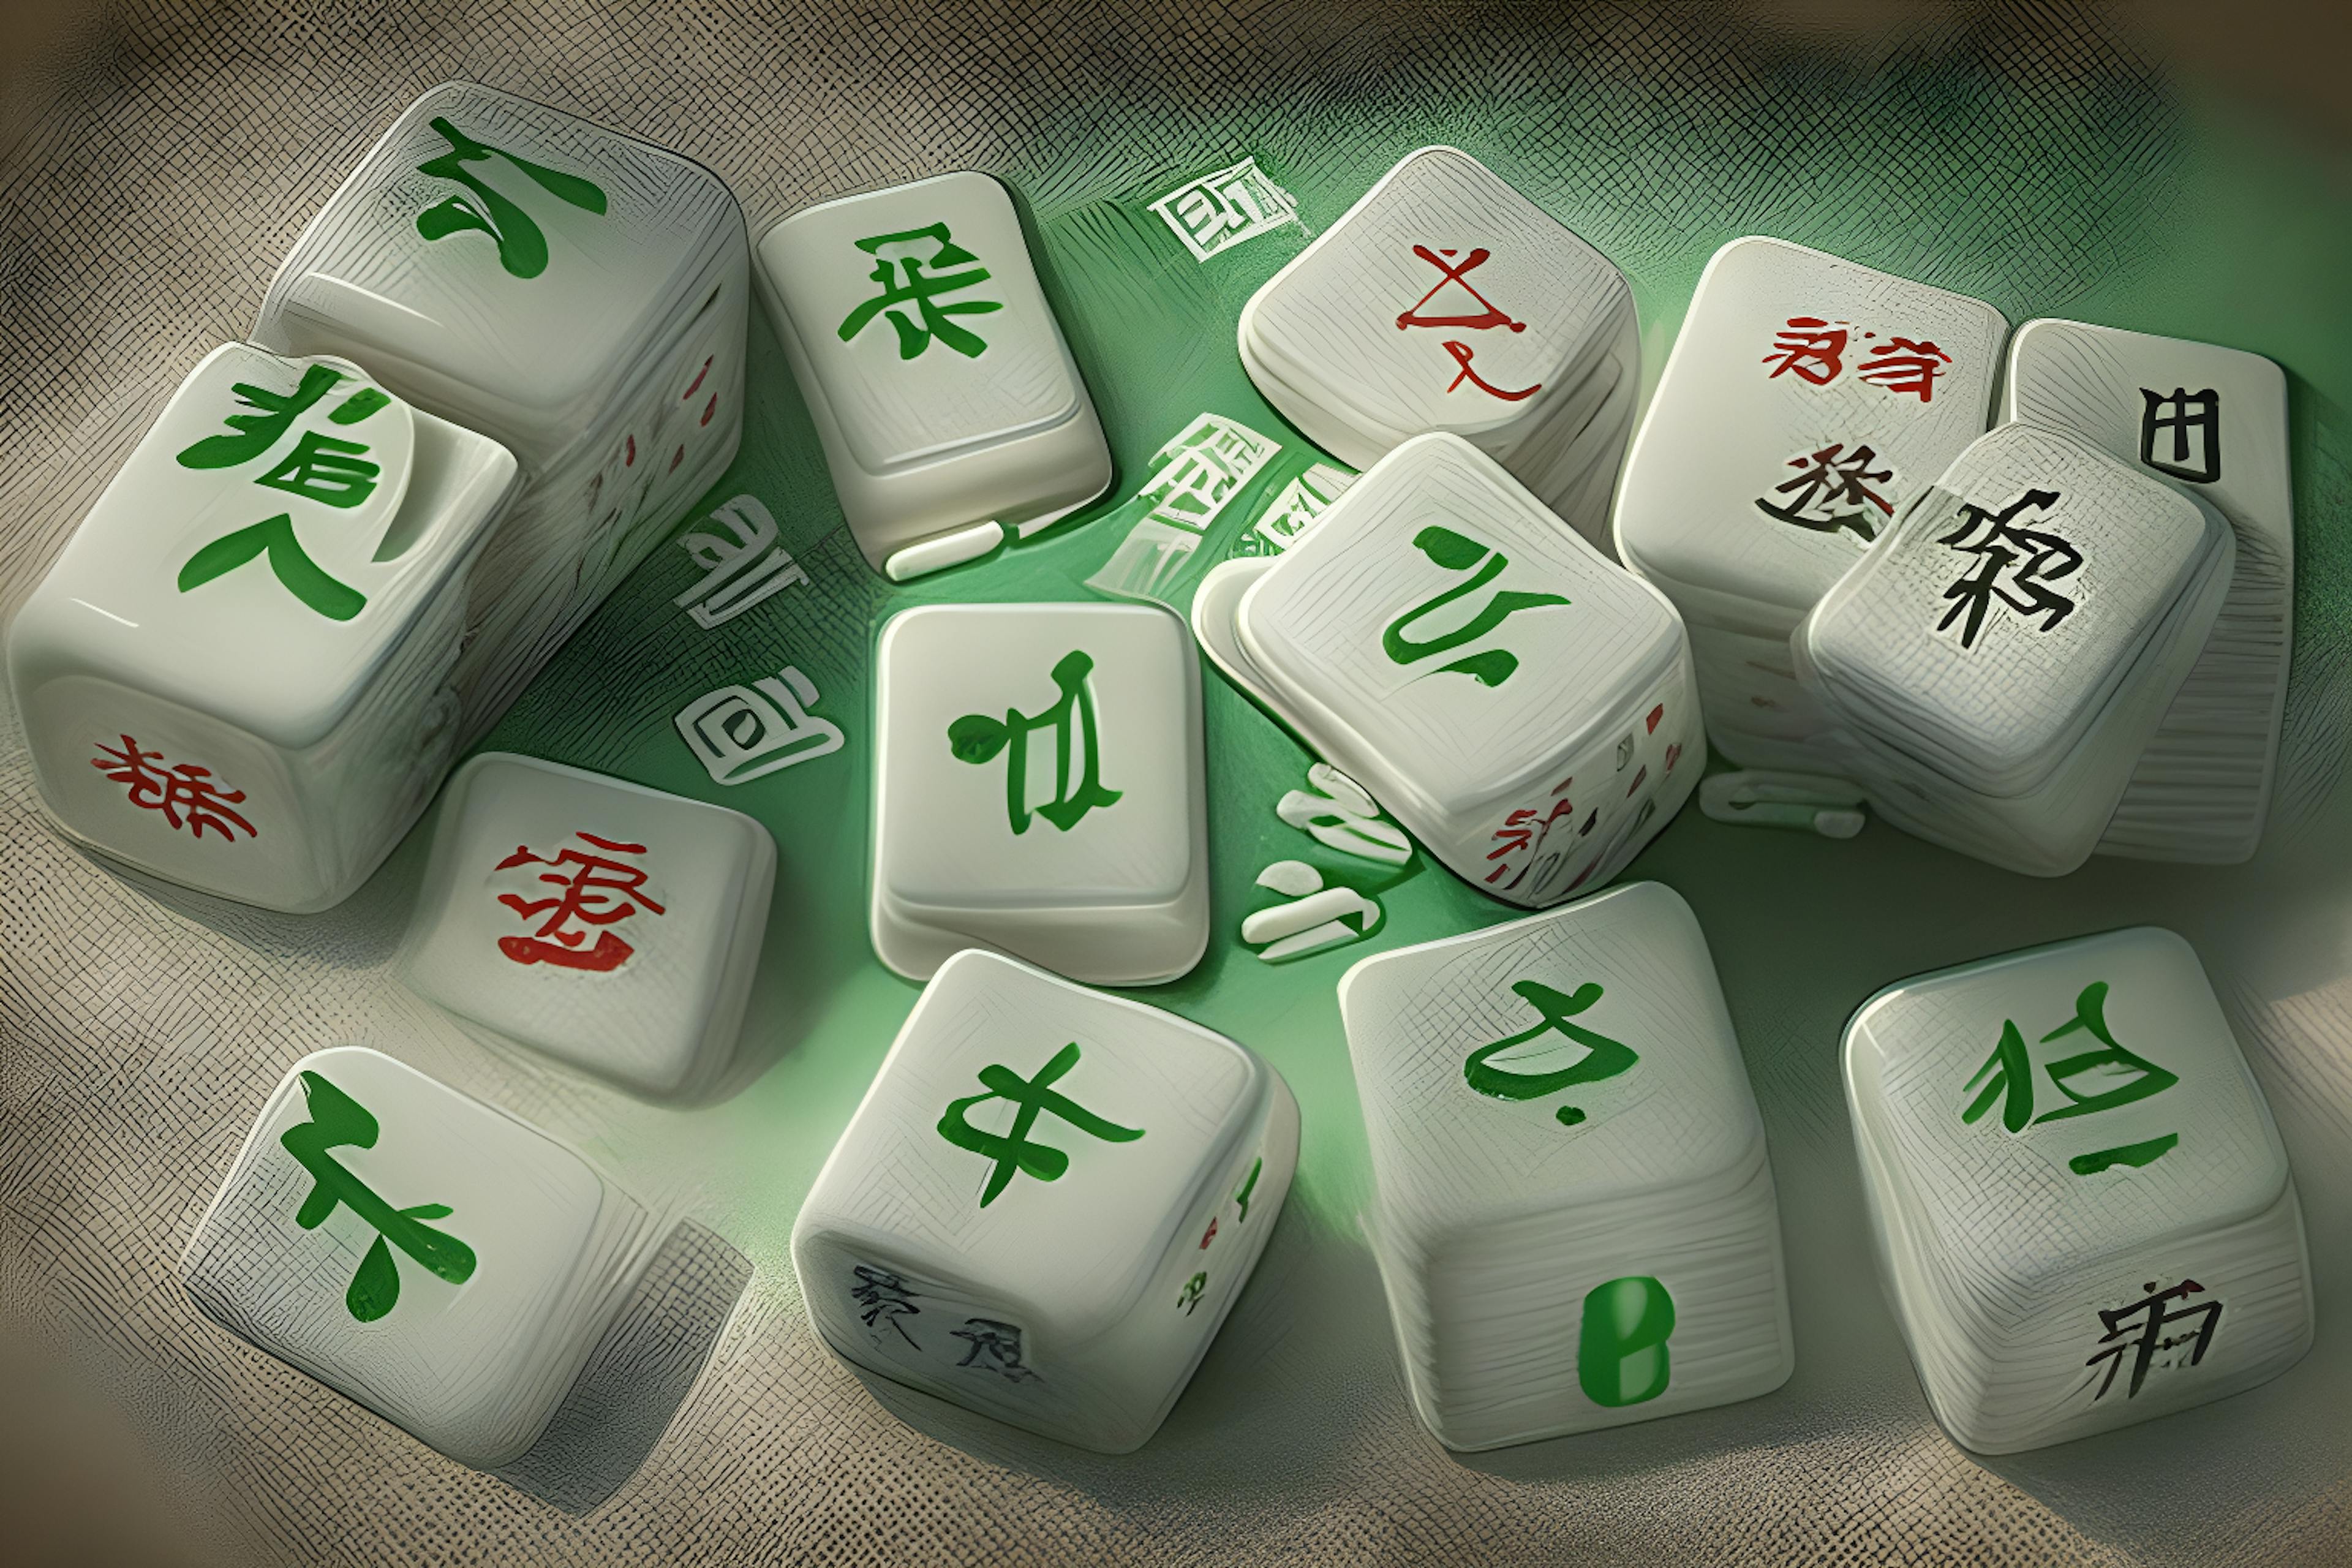 featured image - 0xMahjong NFT para começar a cunhagem gratuita - Mahjong Meta Game espera mais de $ 10 milhões em financiamento